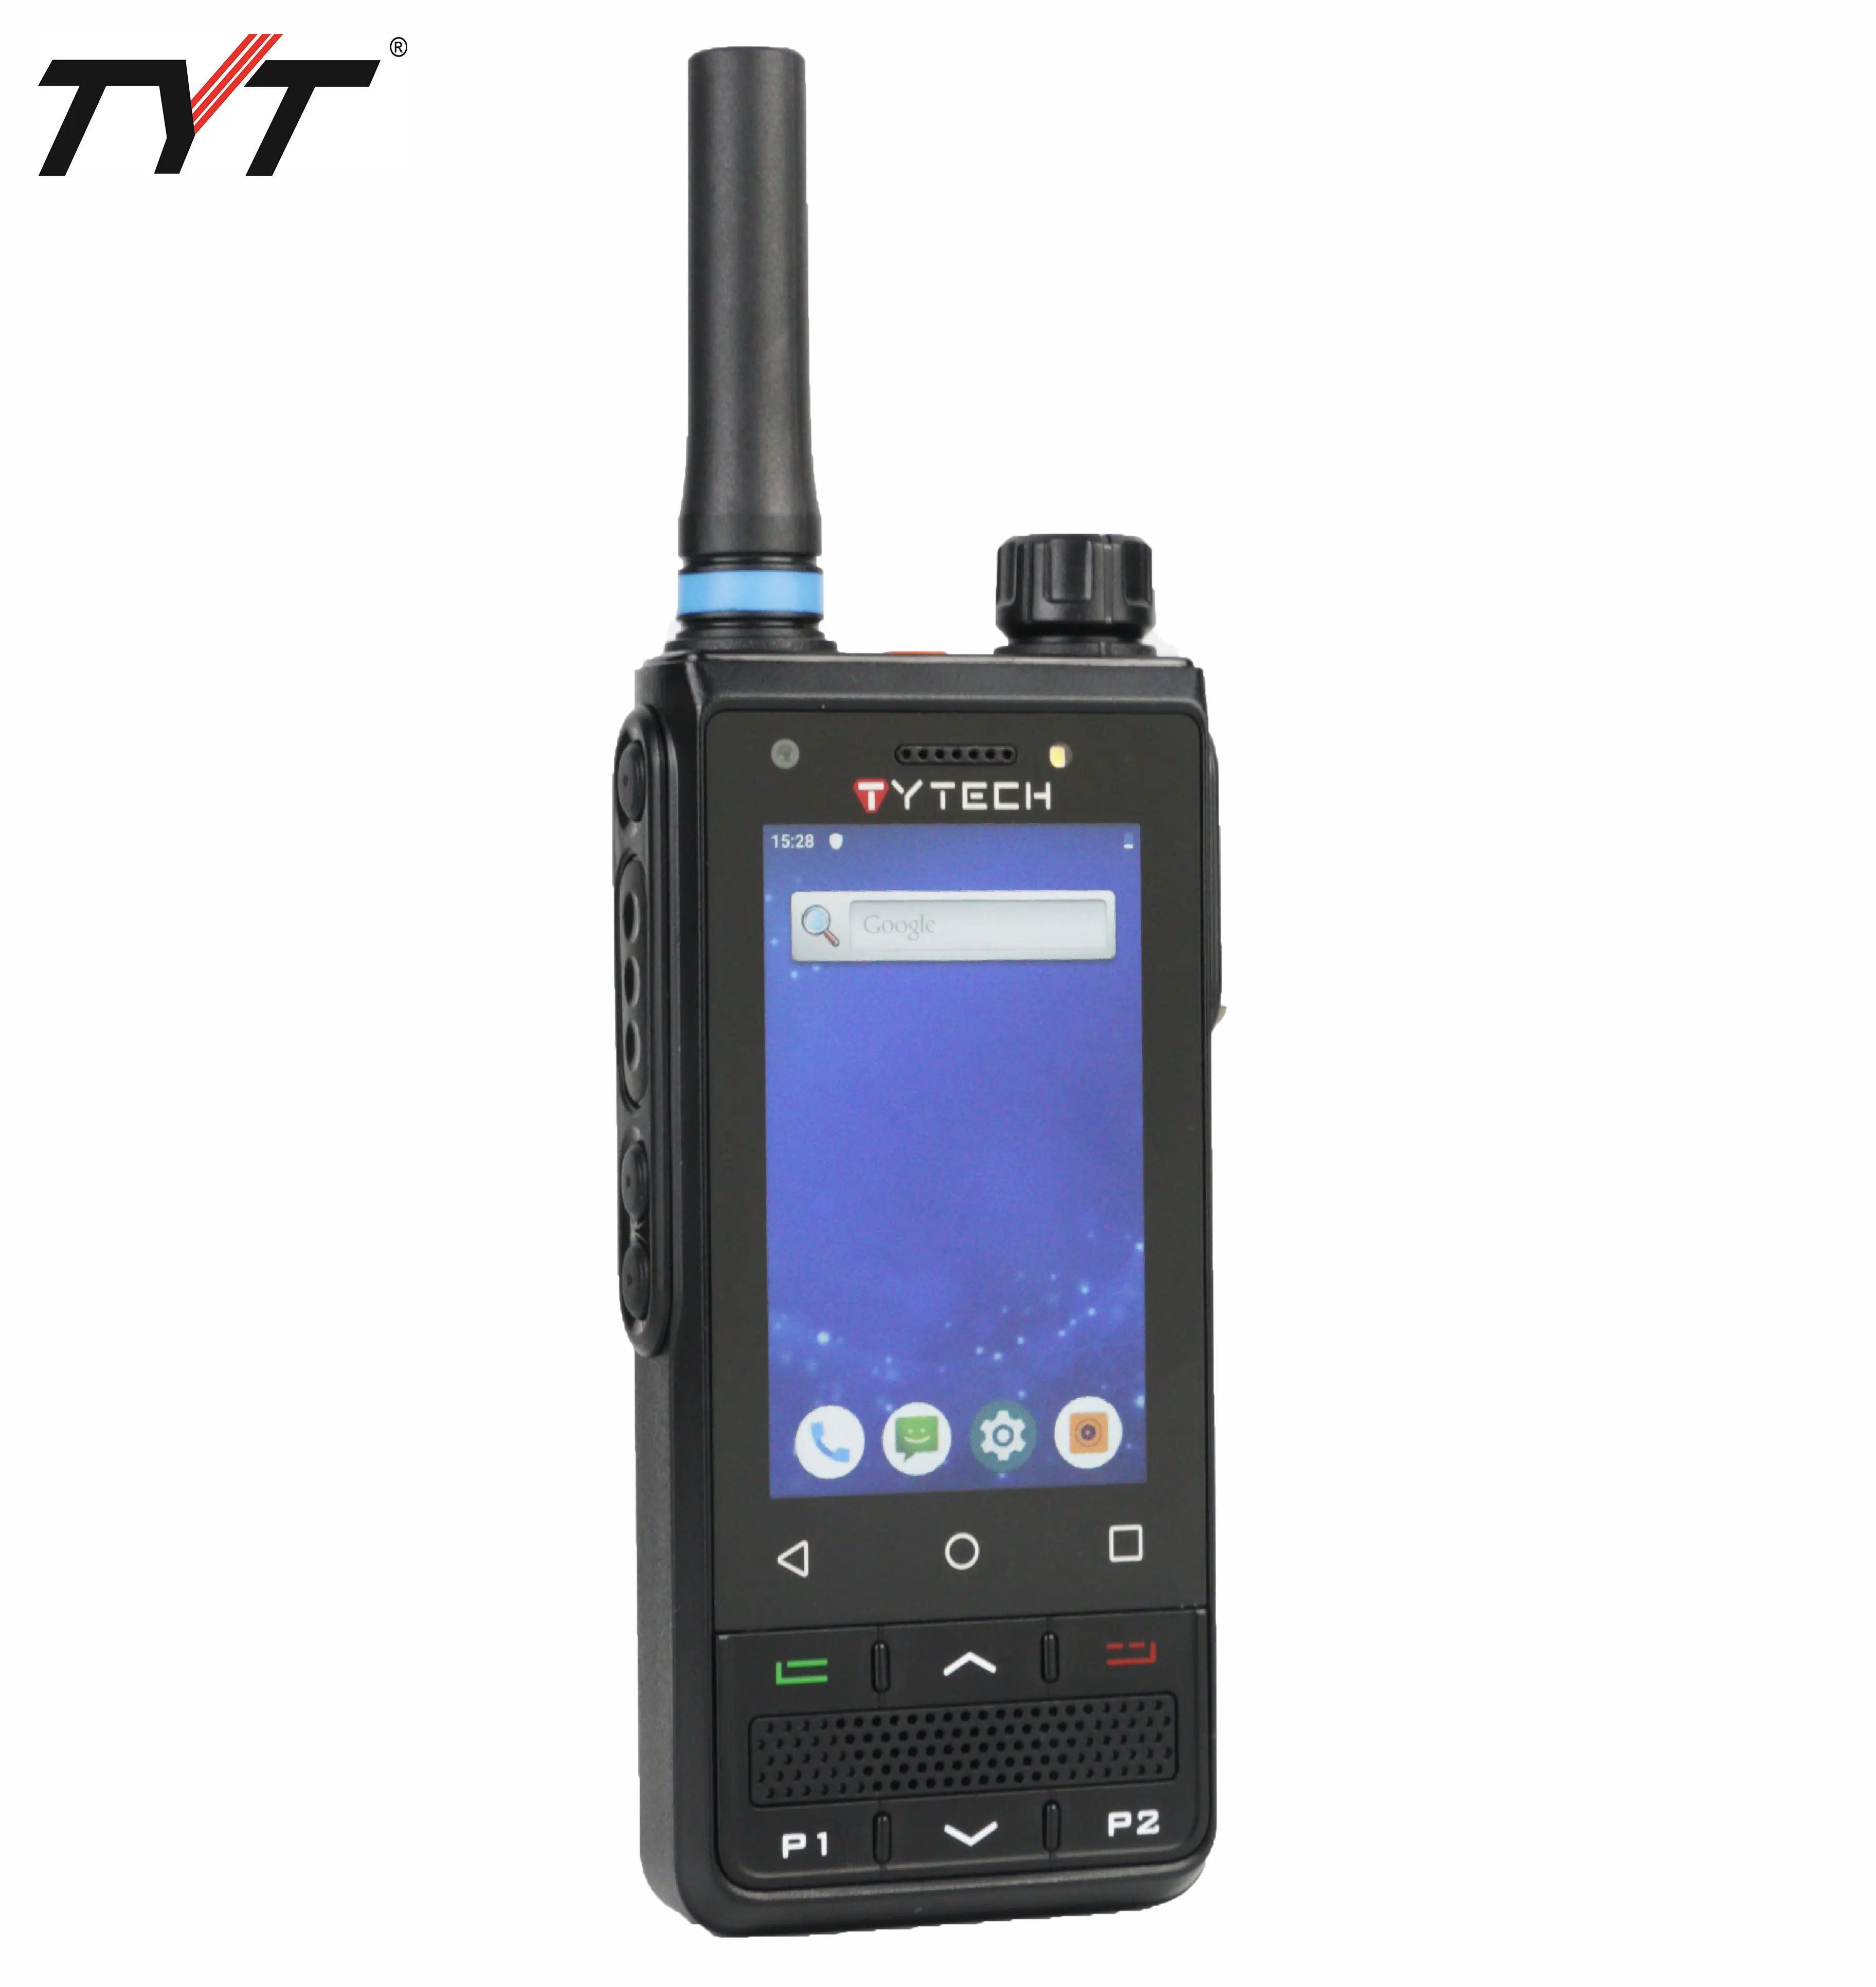 Nouveau produit TYT IP-78 push to talk radio réseau talkie-walkie 4g réseau POC réseau talkie-walkie avec carte SIM